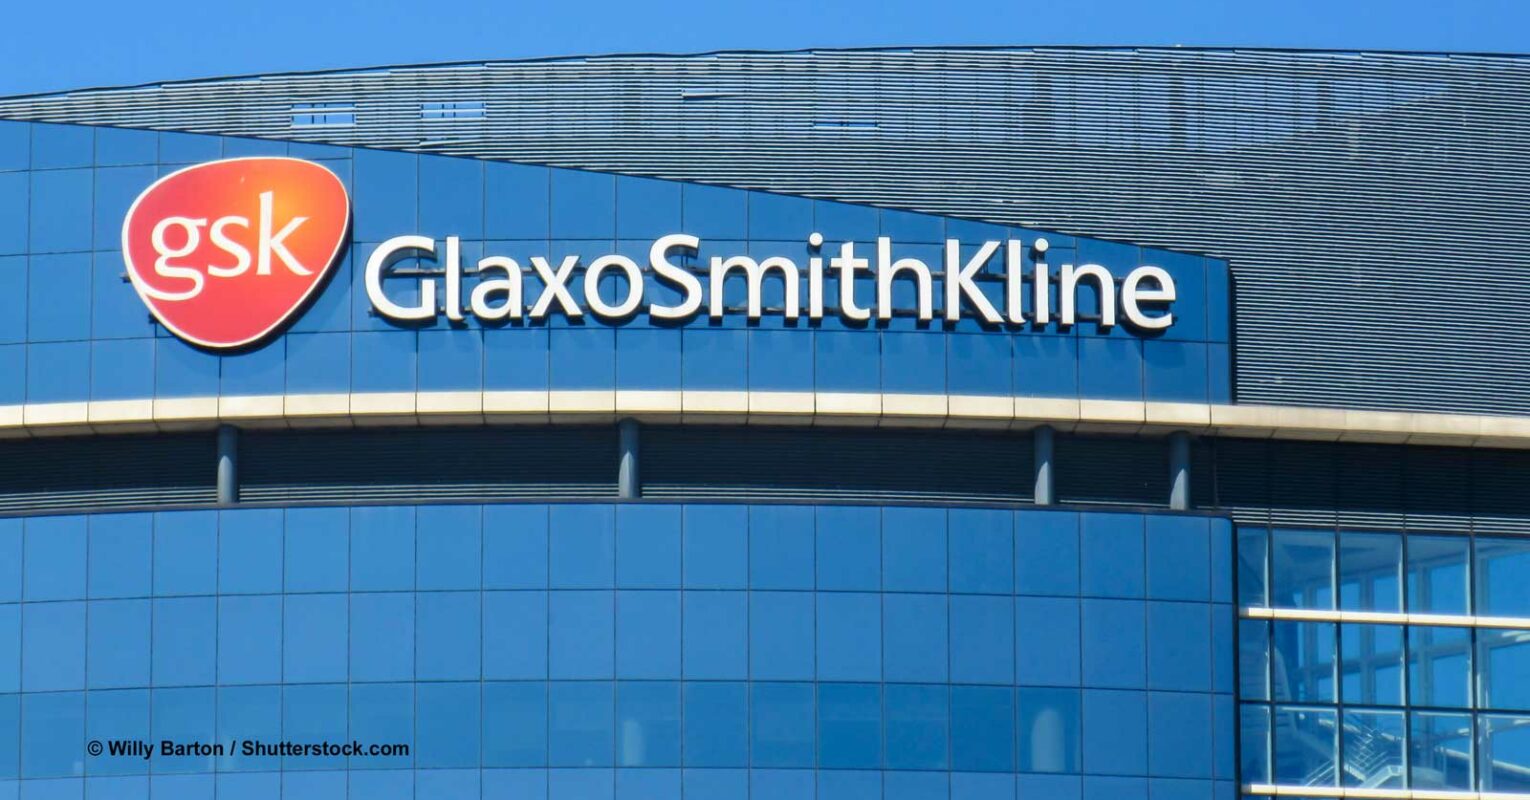 GlaxoSmithKline lehnt Unilever-Offerte von 60 Milliarden Euro ab